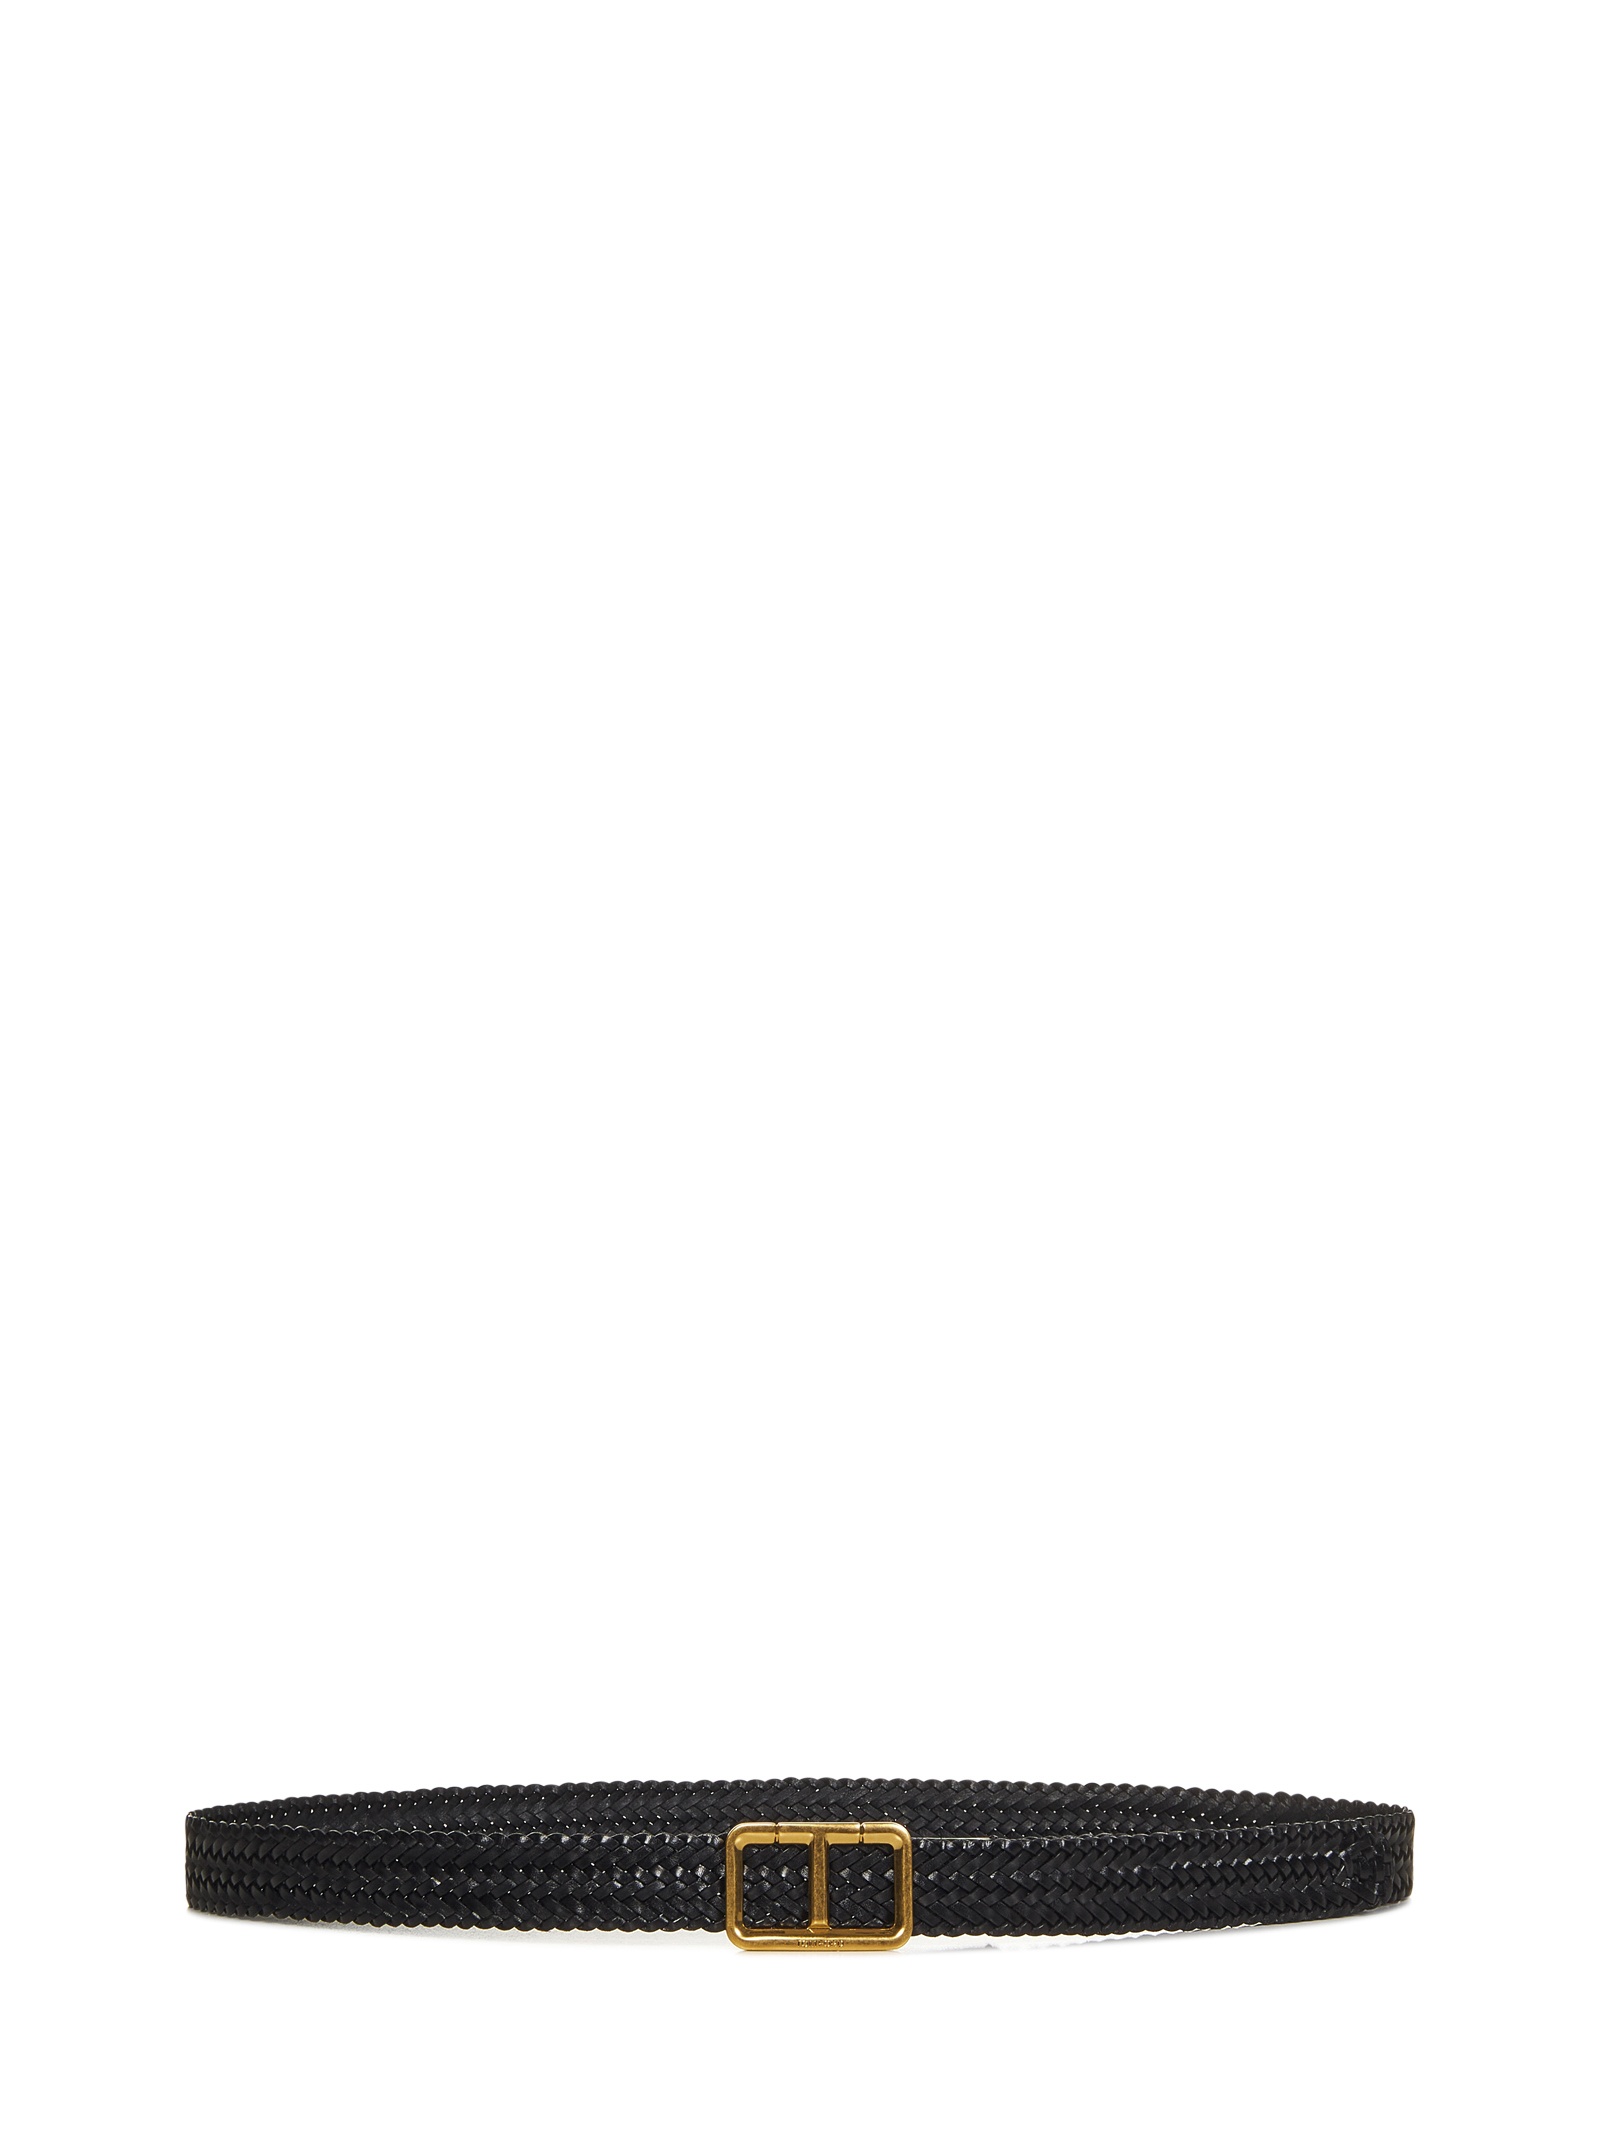 Black woven calfskin belt with golden metal T-shaped buckle. - 1